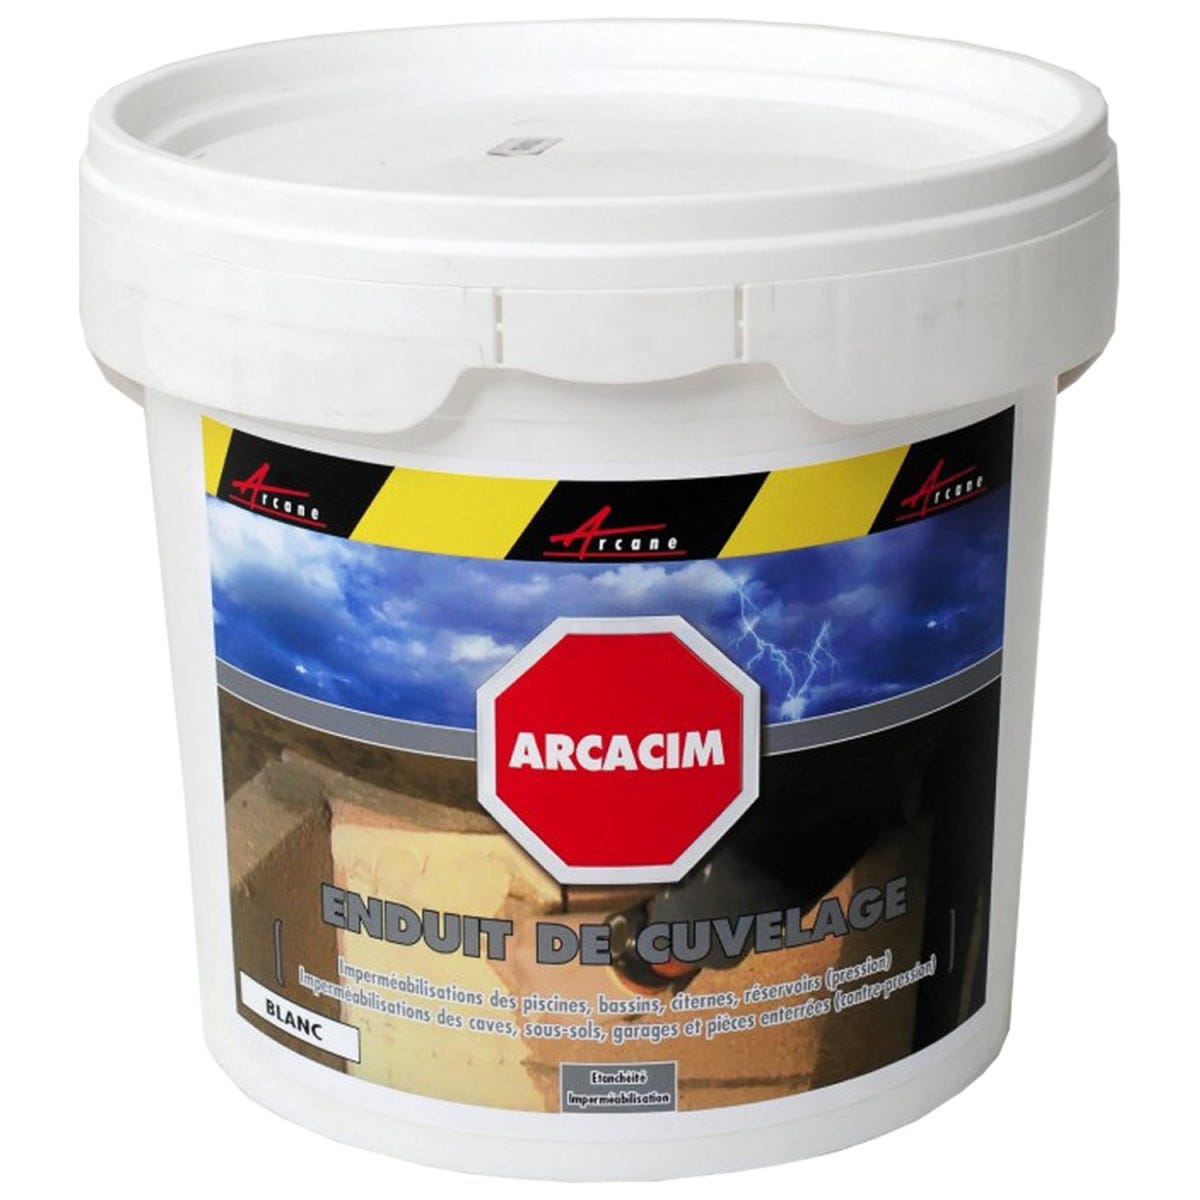 Enduit d'étanchéité hydrofuge pour support maçonné - ARCACIM - 5 kg - Blanc - ARCANE INDUSTRIES 2